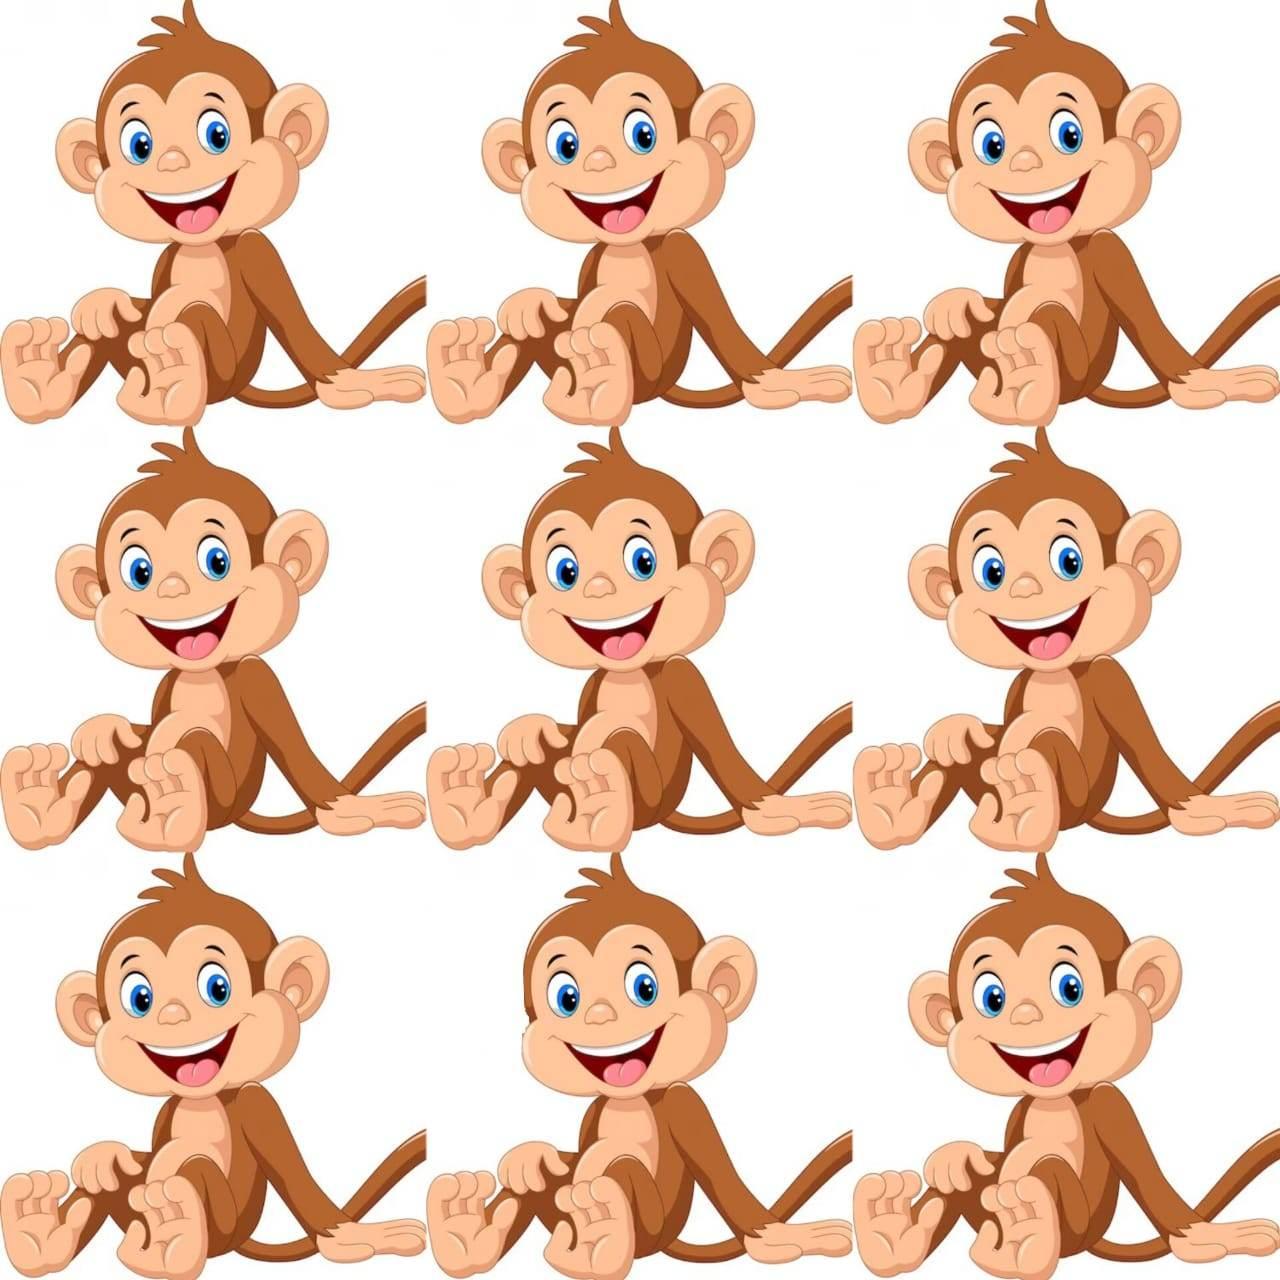 اختبار قوة الملاحظة.. أوجد القرد المختلف في الصورة خلال 20 ثانية فقط